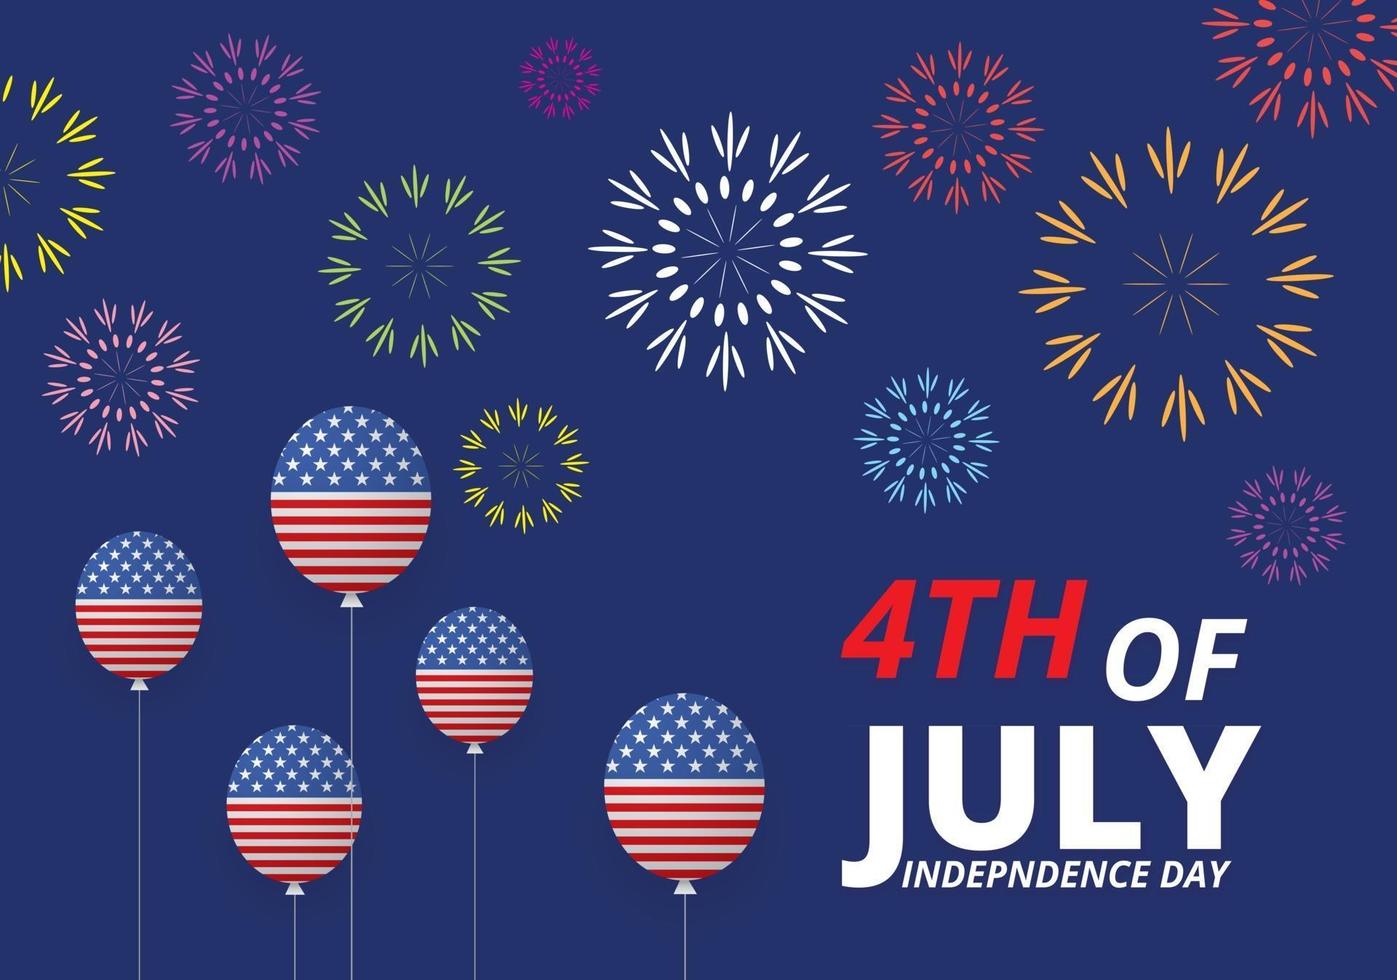 4 juli självständighetsdagen vektor